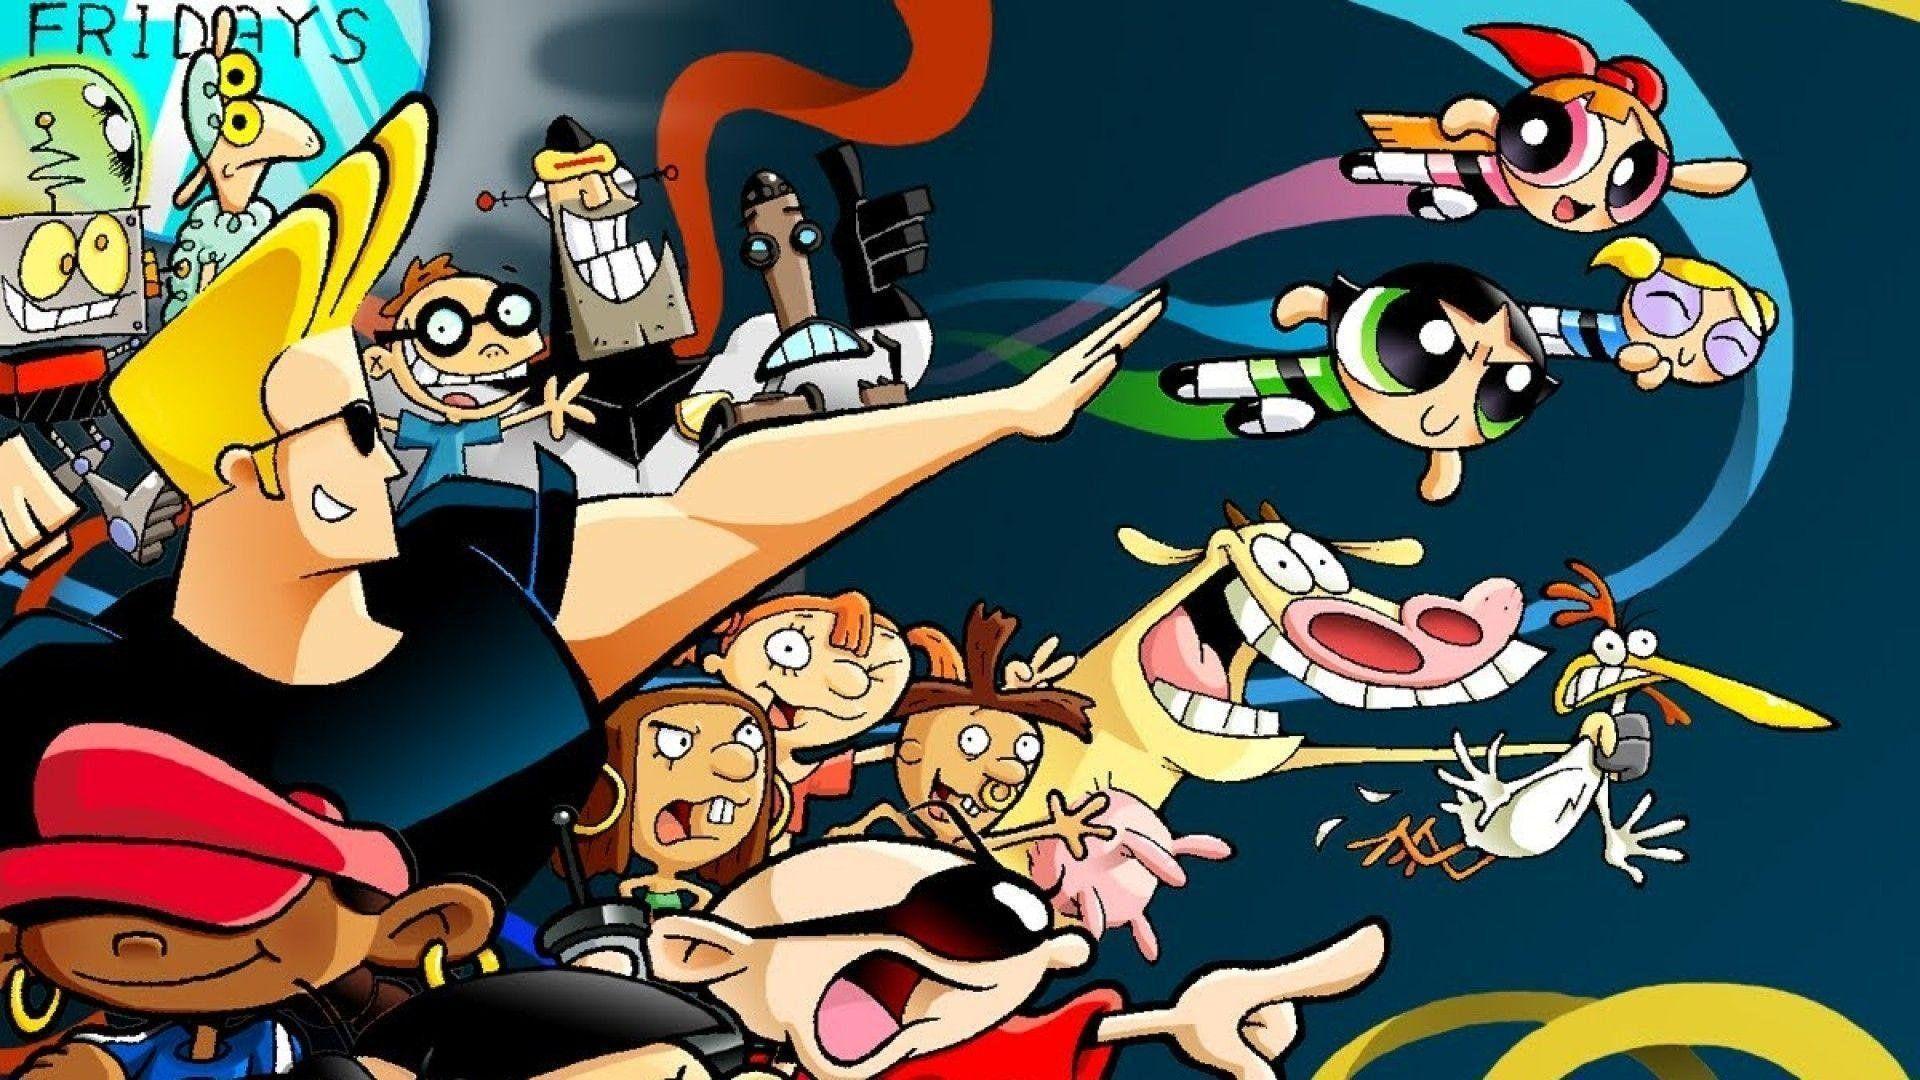 Wallpaper Nickelodeon Fondos De Pantalla Caricaturas Fondos De Porn